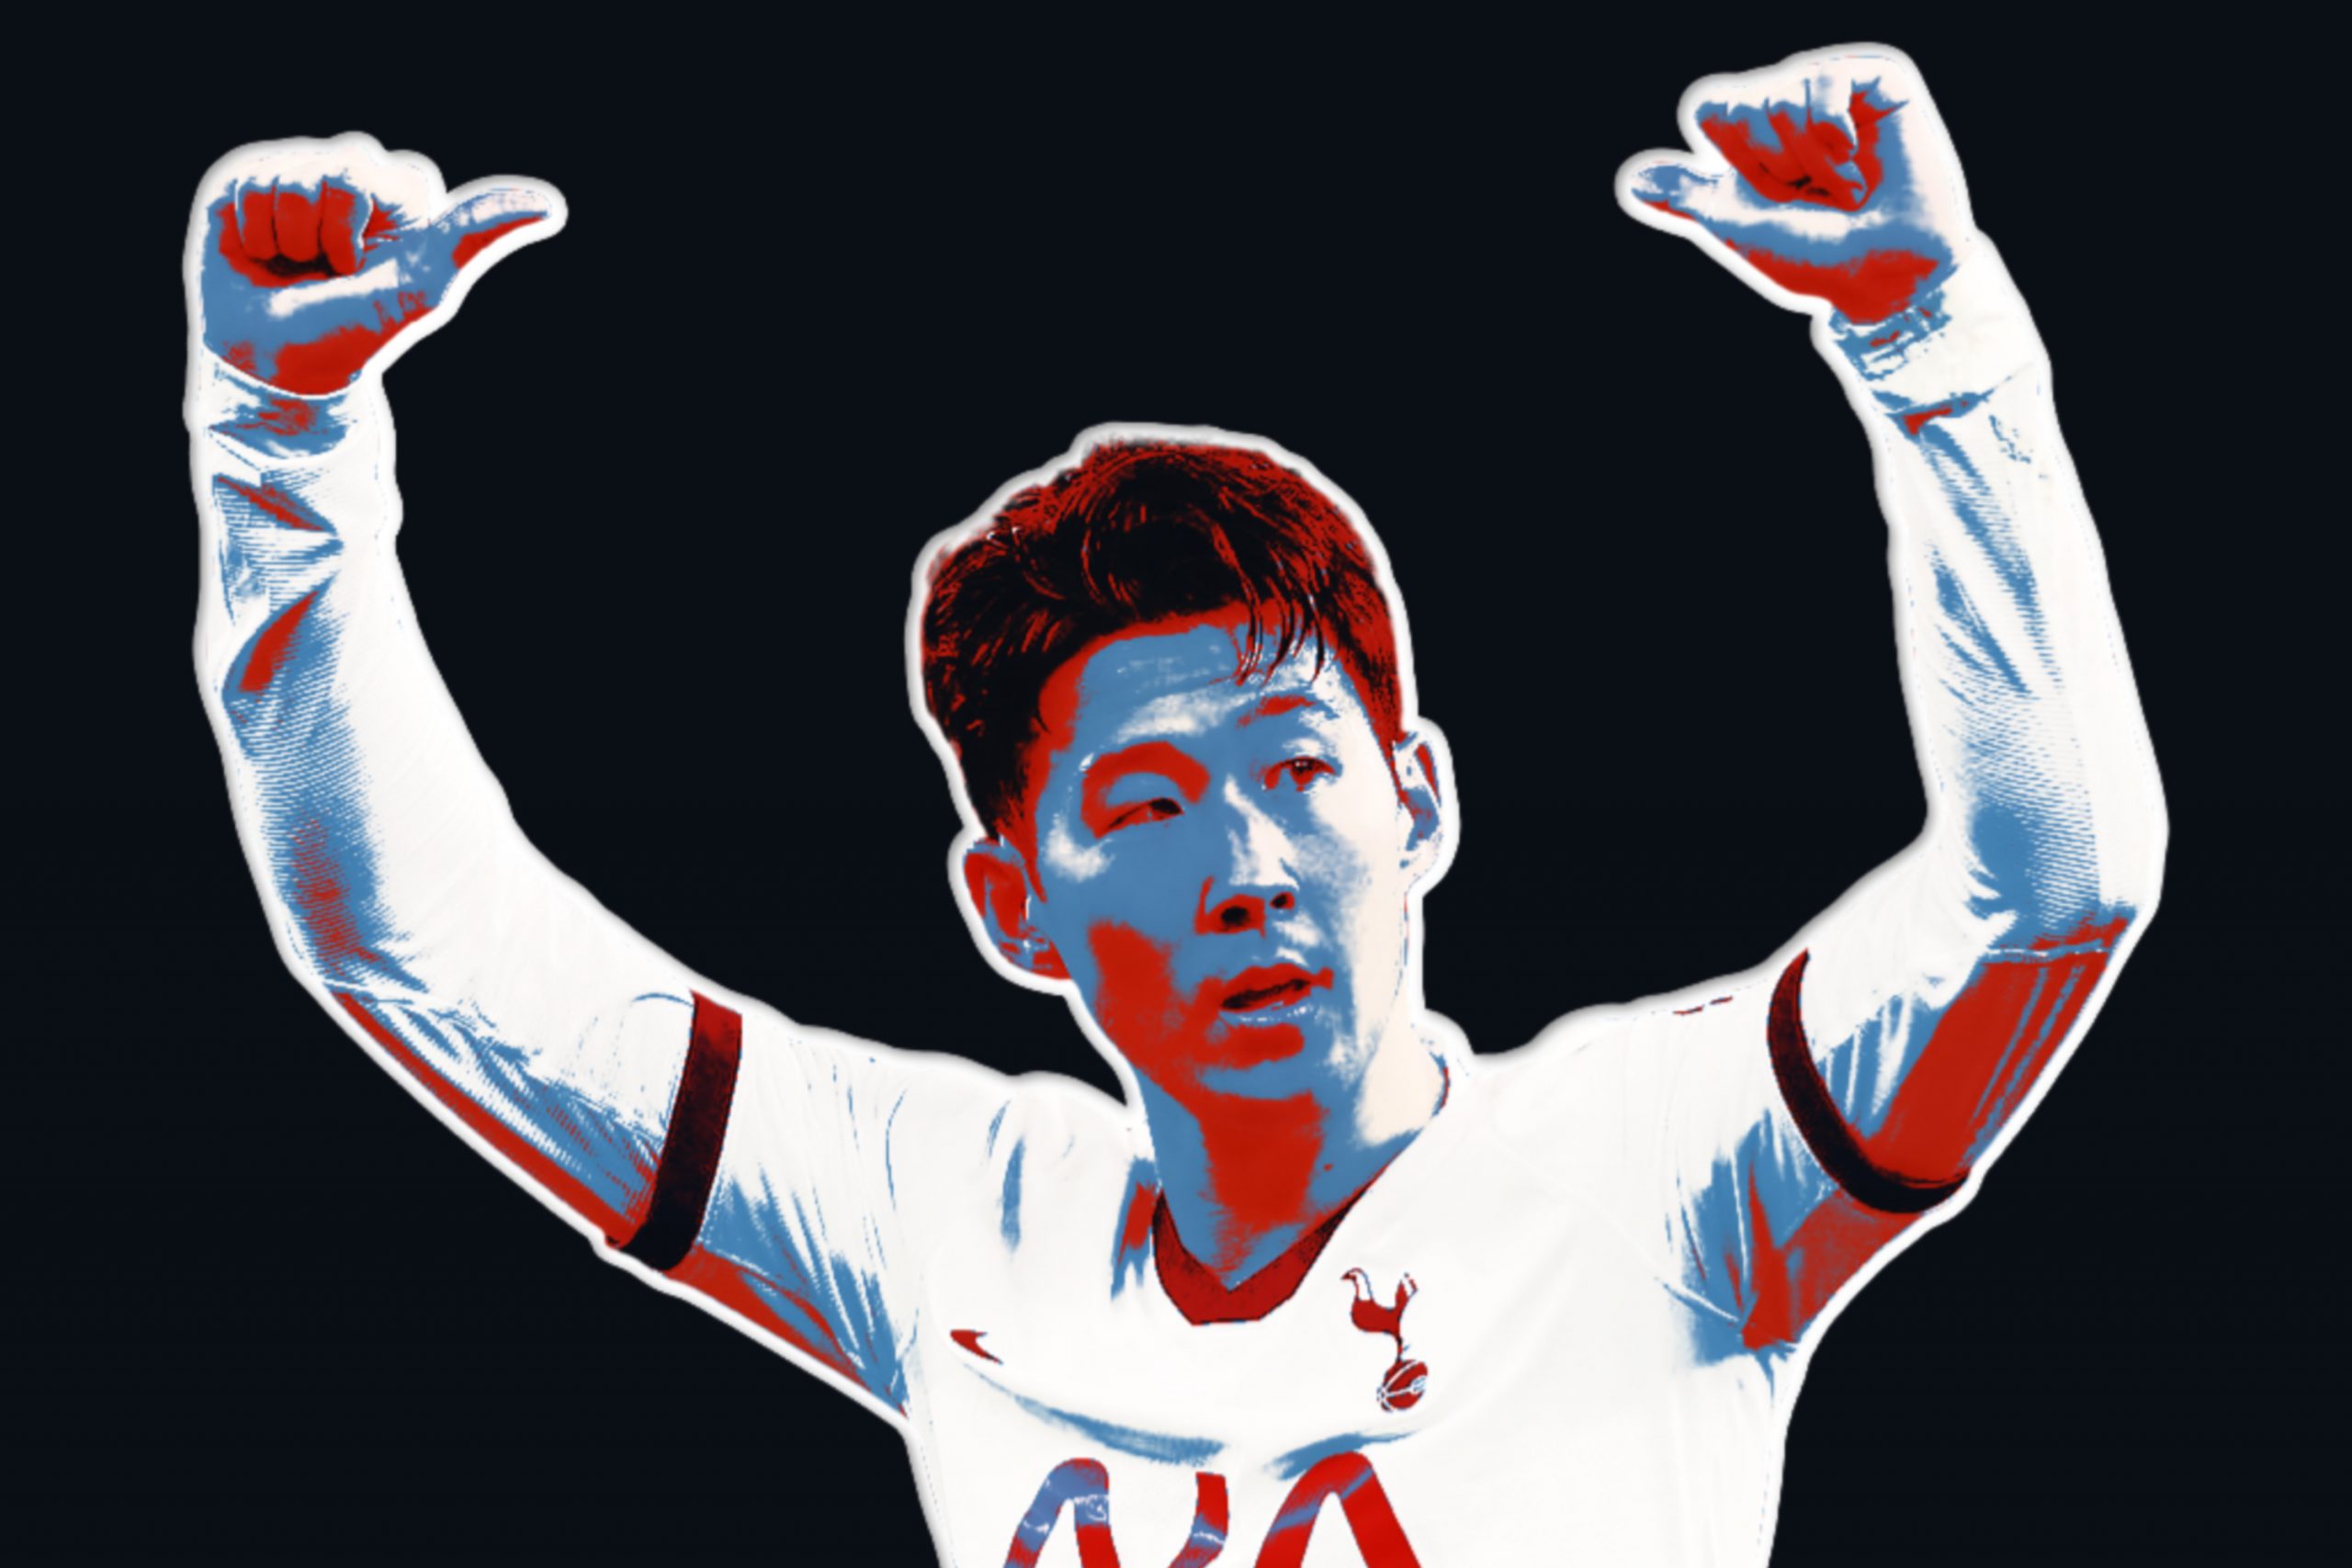 Tottenham ace Son Heung-min labeled ‘clinical’ as new Kim Jong-un update arrives online